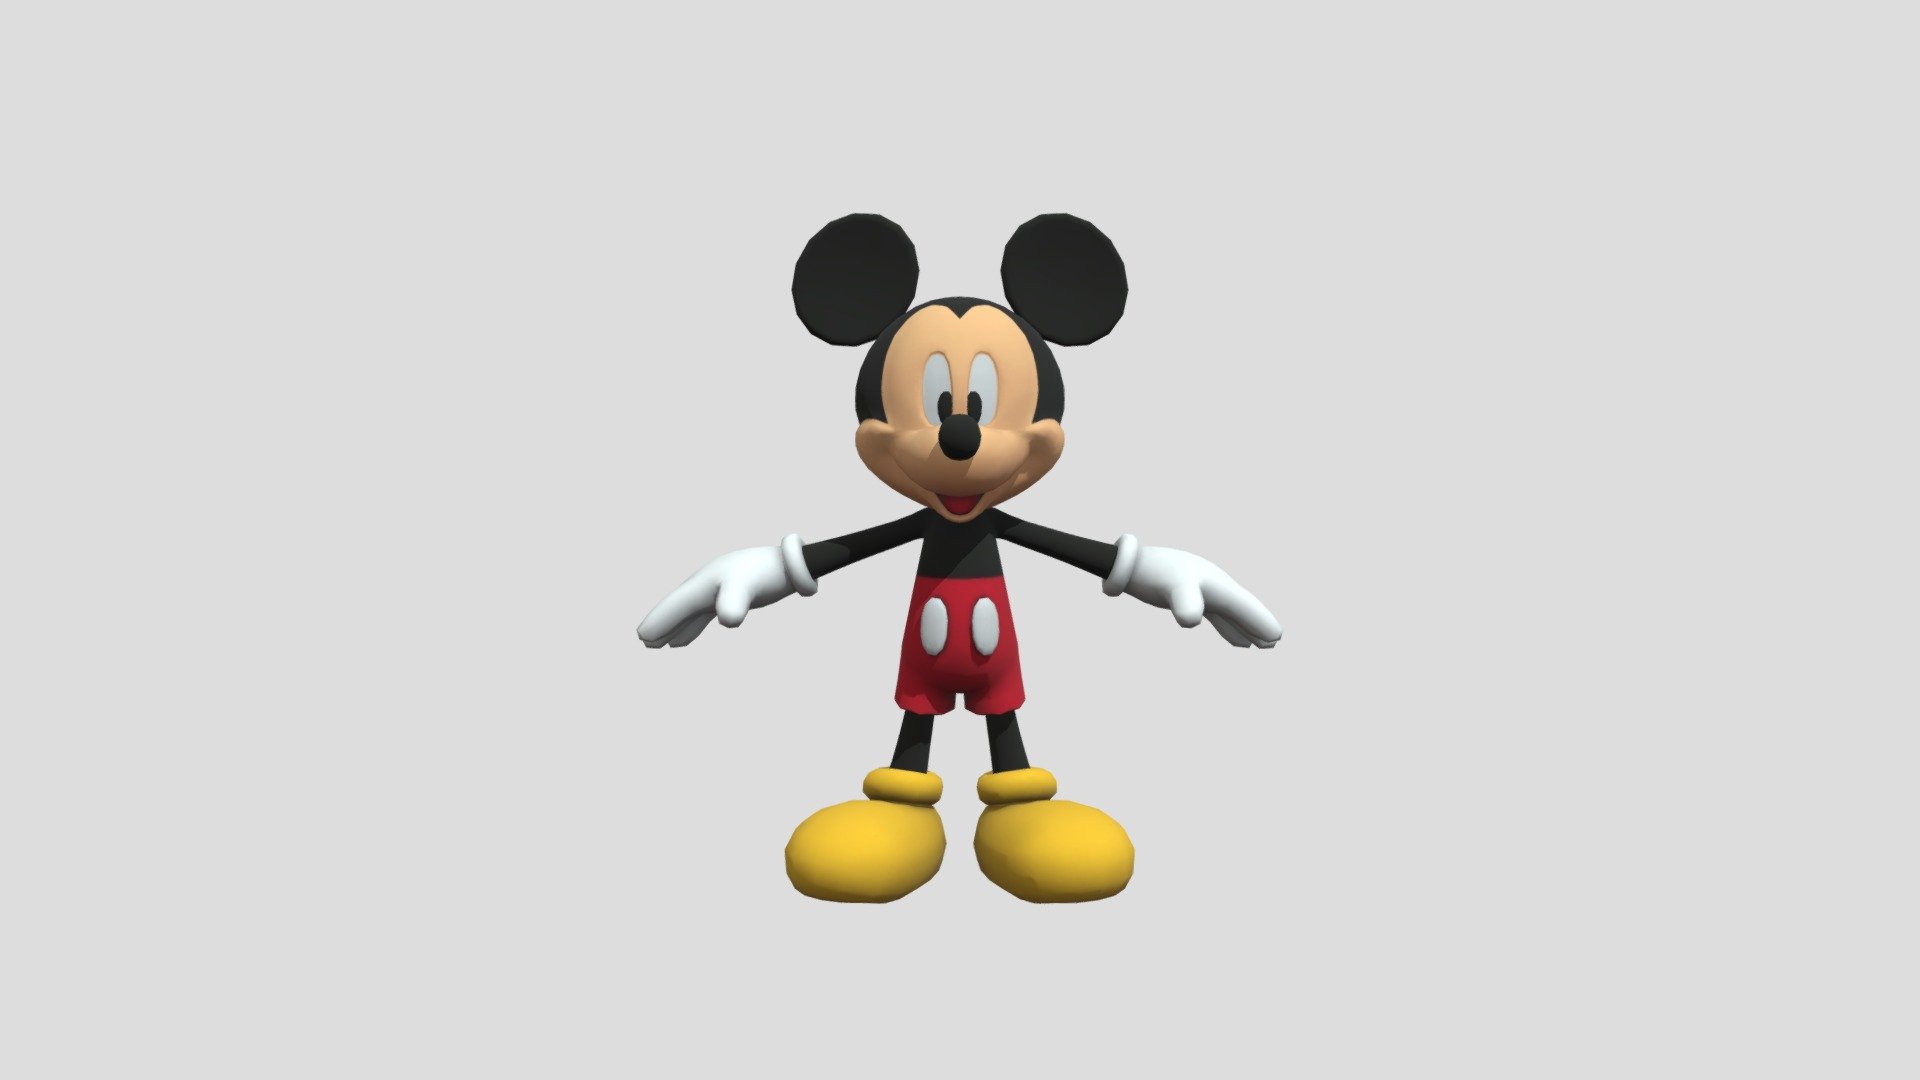 rodar Transistor Contento Mickey-mouse-fbx - Download Free 3D model by jadiel.ozuno (@jadiel.ozuna)  [8cfc790]